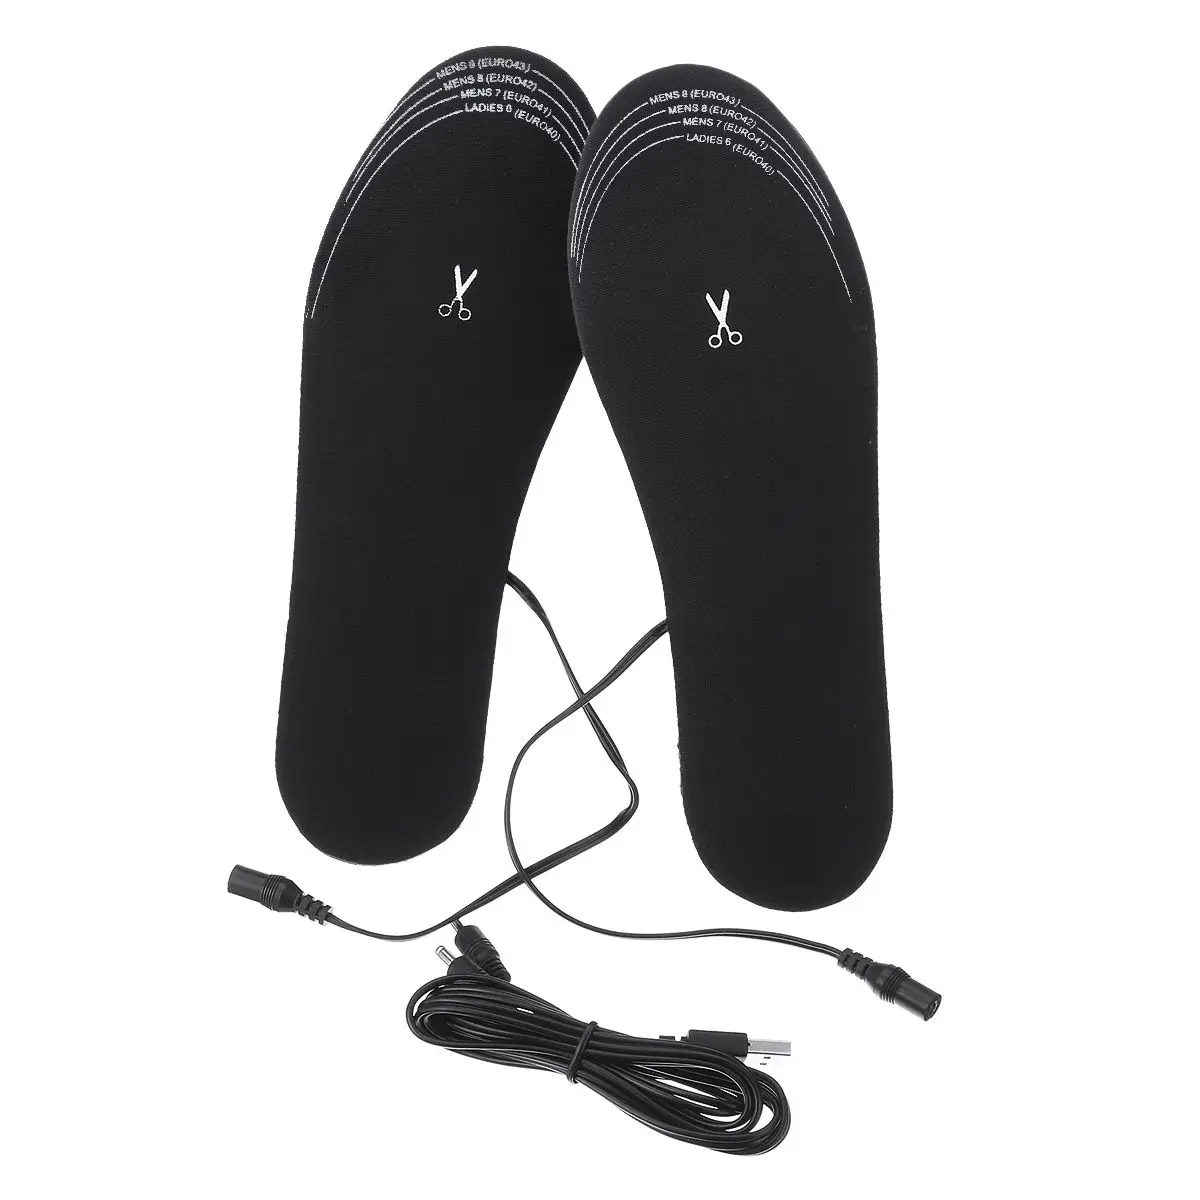 34-45 USB стельки с электрическим подогревом подошвы ноги теплые сапоги обувь Подкладка Зима мягкий флис грелку для мужчин и женщин